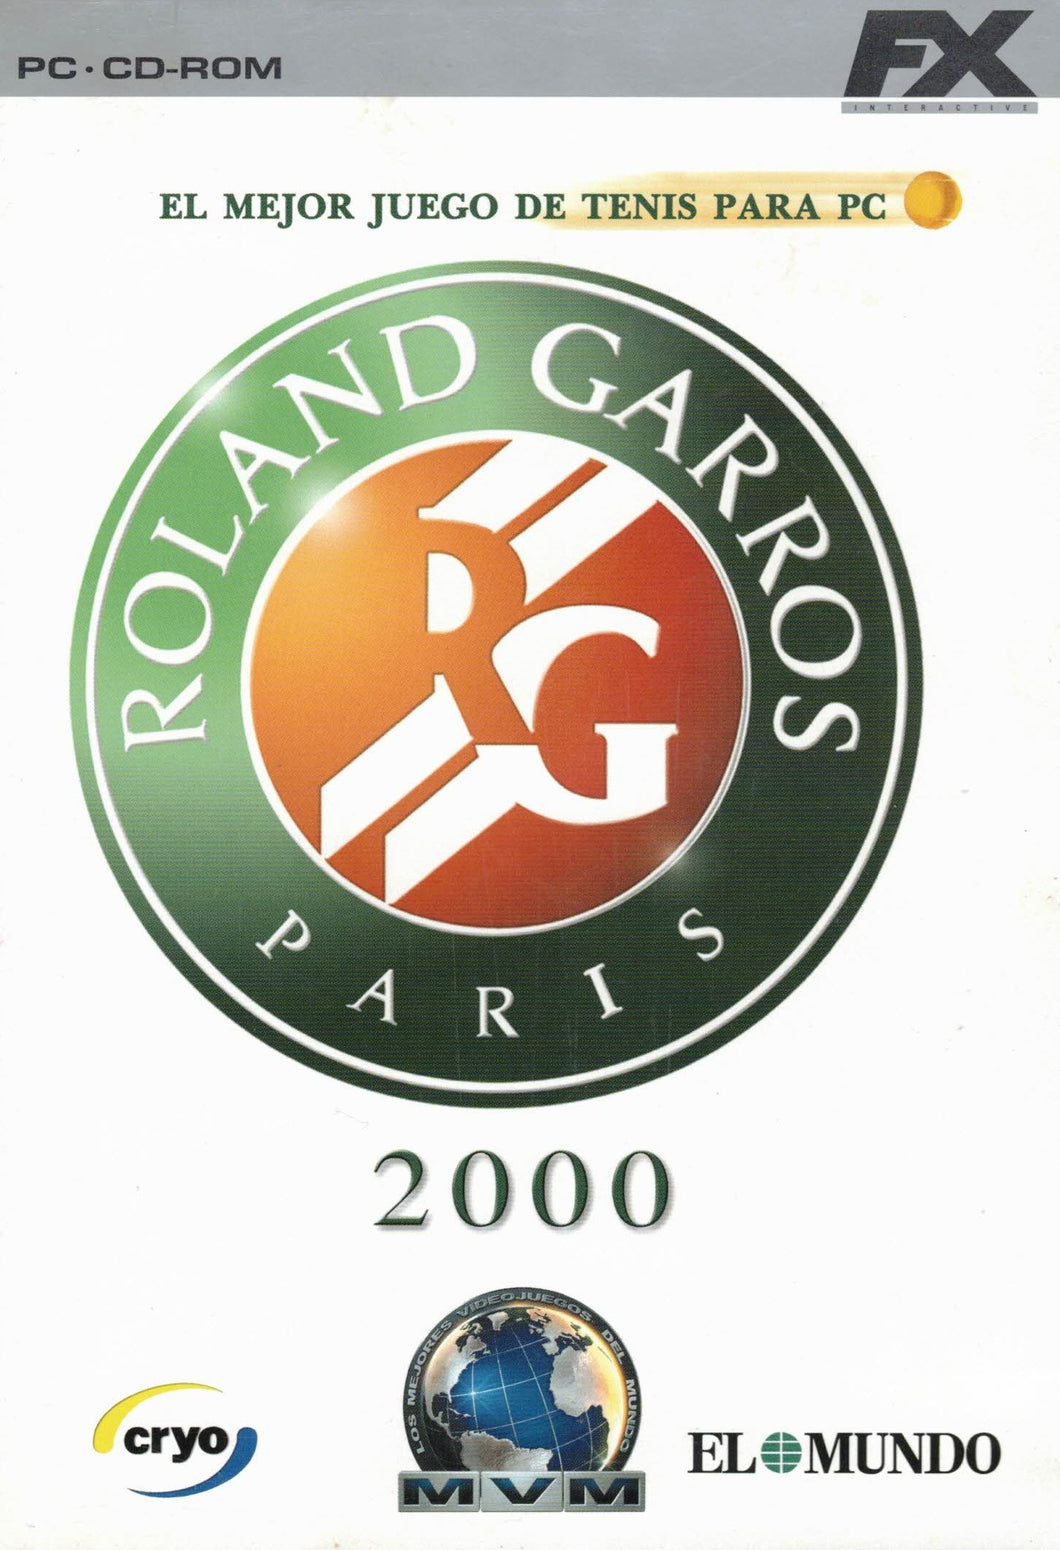 Roland Garros Paris 2000 (PC CD-ROM) C-202 (pre-owned very good)